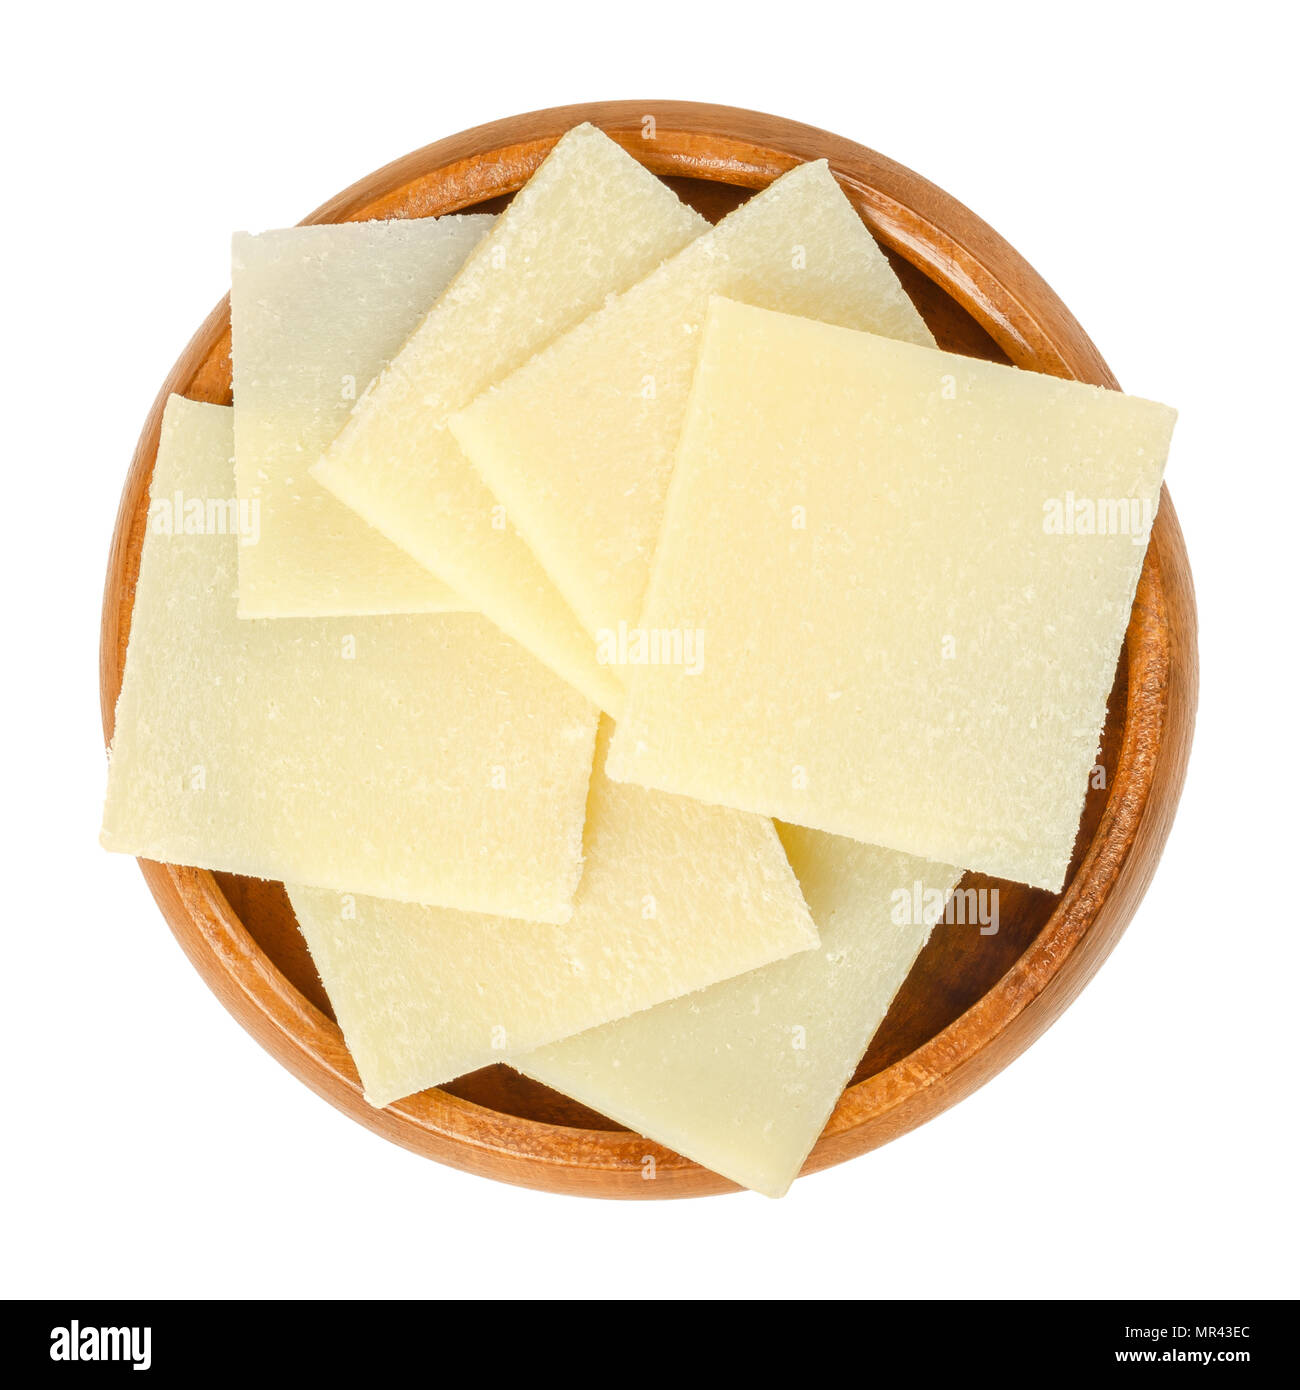 Parmigiano reggiano di pezzi nel recipiente di legno. Parmigiano Reggiano. Duro italiano, granulare formaggio, leggermente di colore giallo, fatta di pastorizzato di latte di vacca. Foto Stock